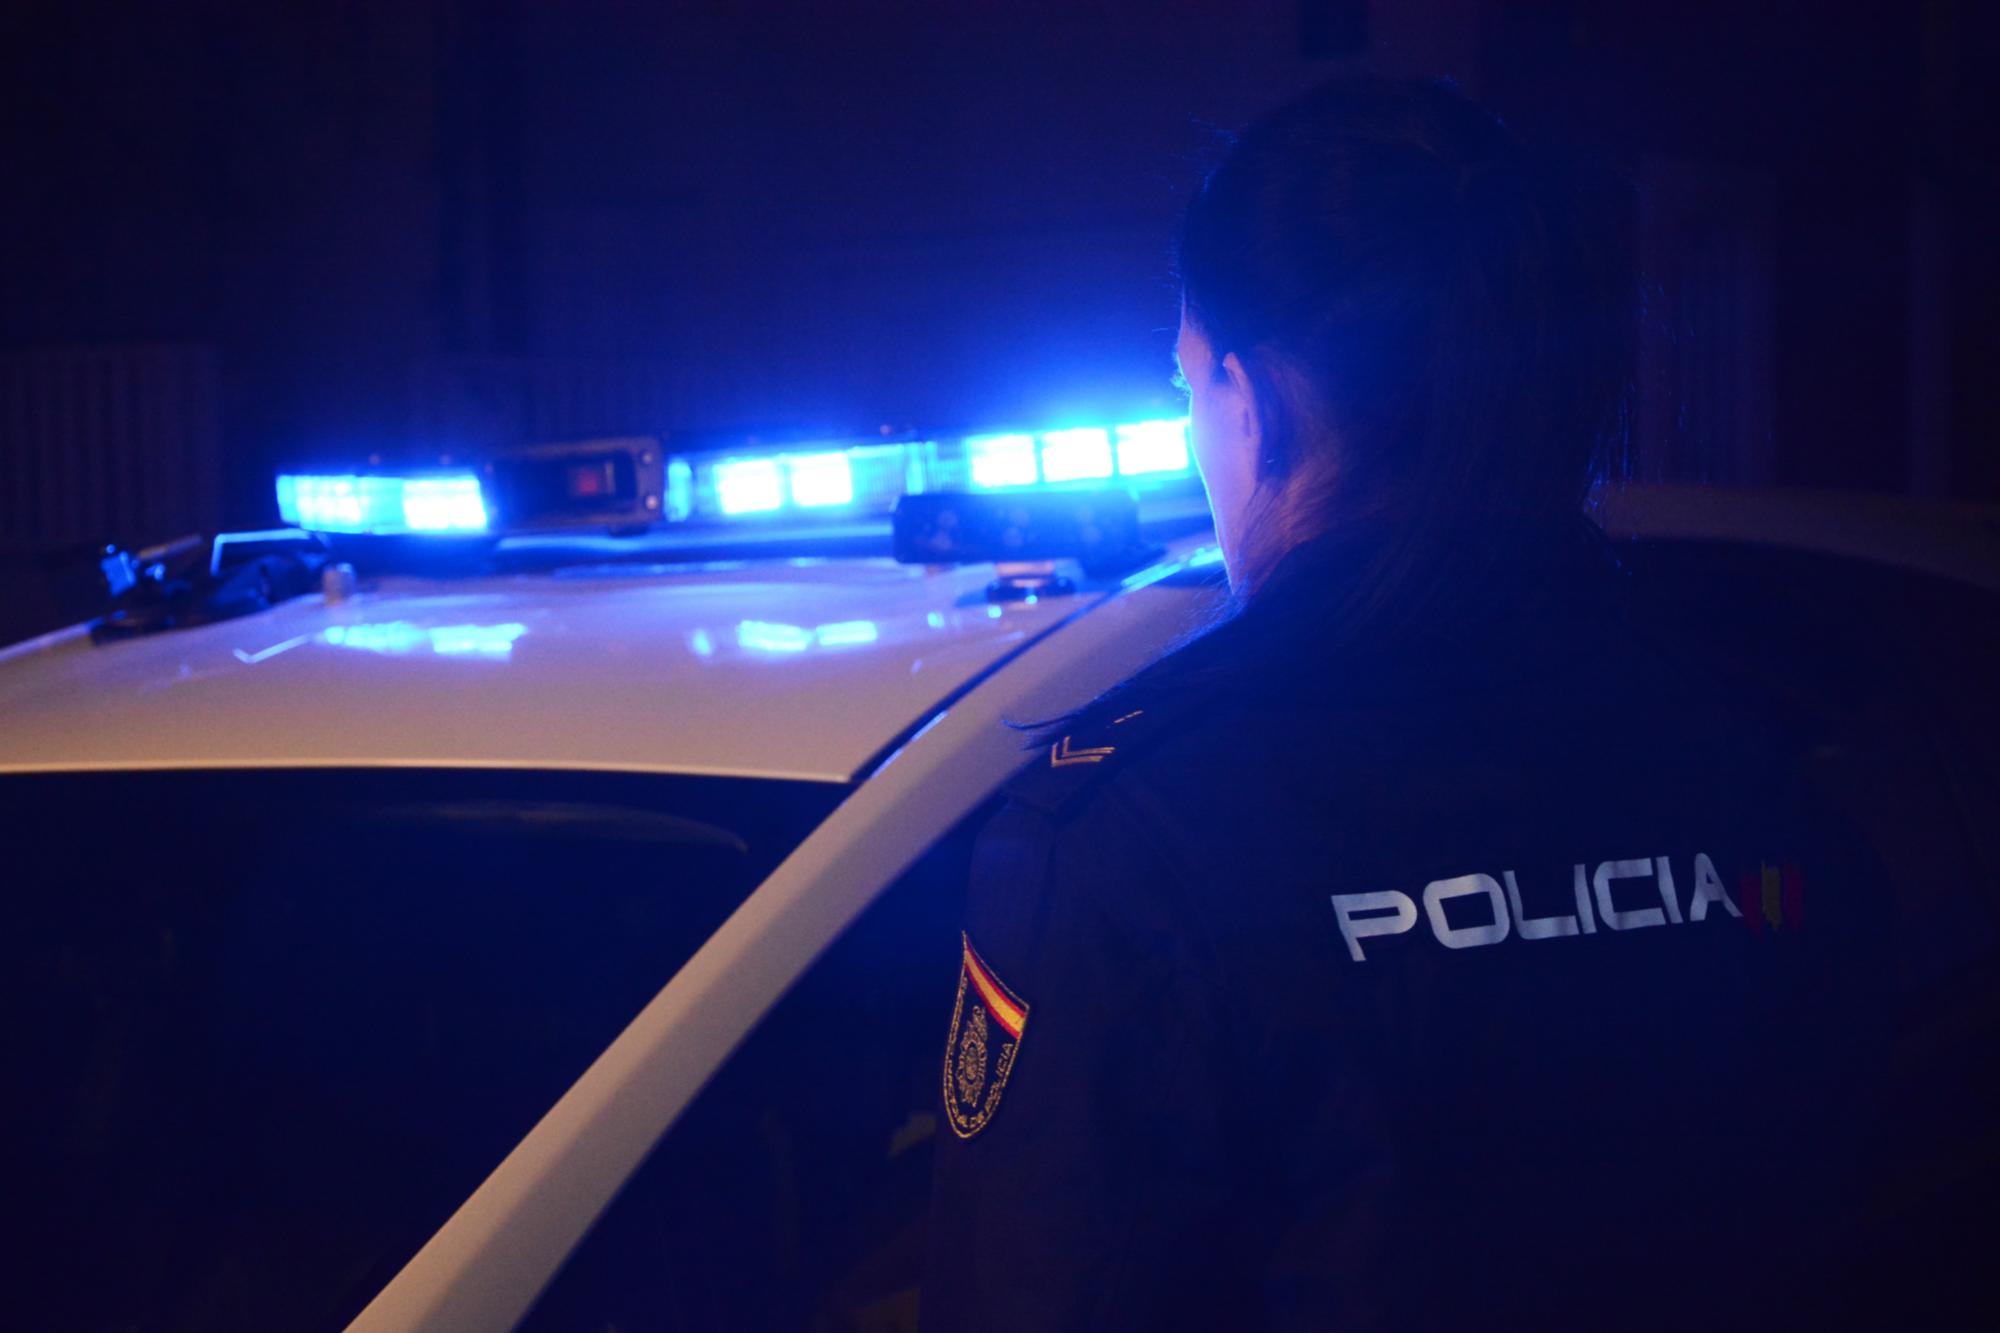 Imagen de las luces de sirena de un vehículo de la policía nacional